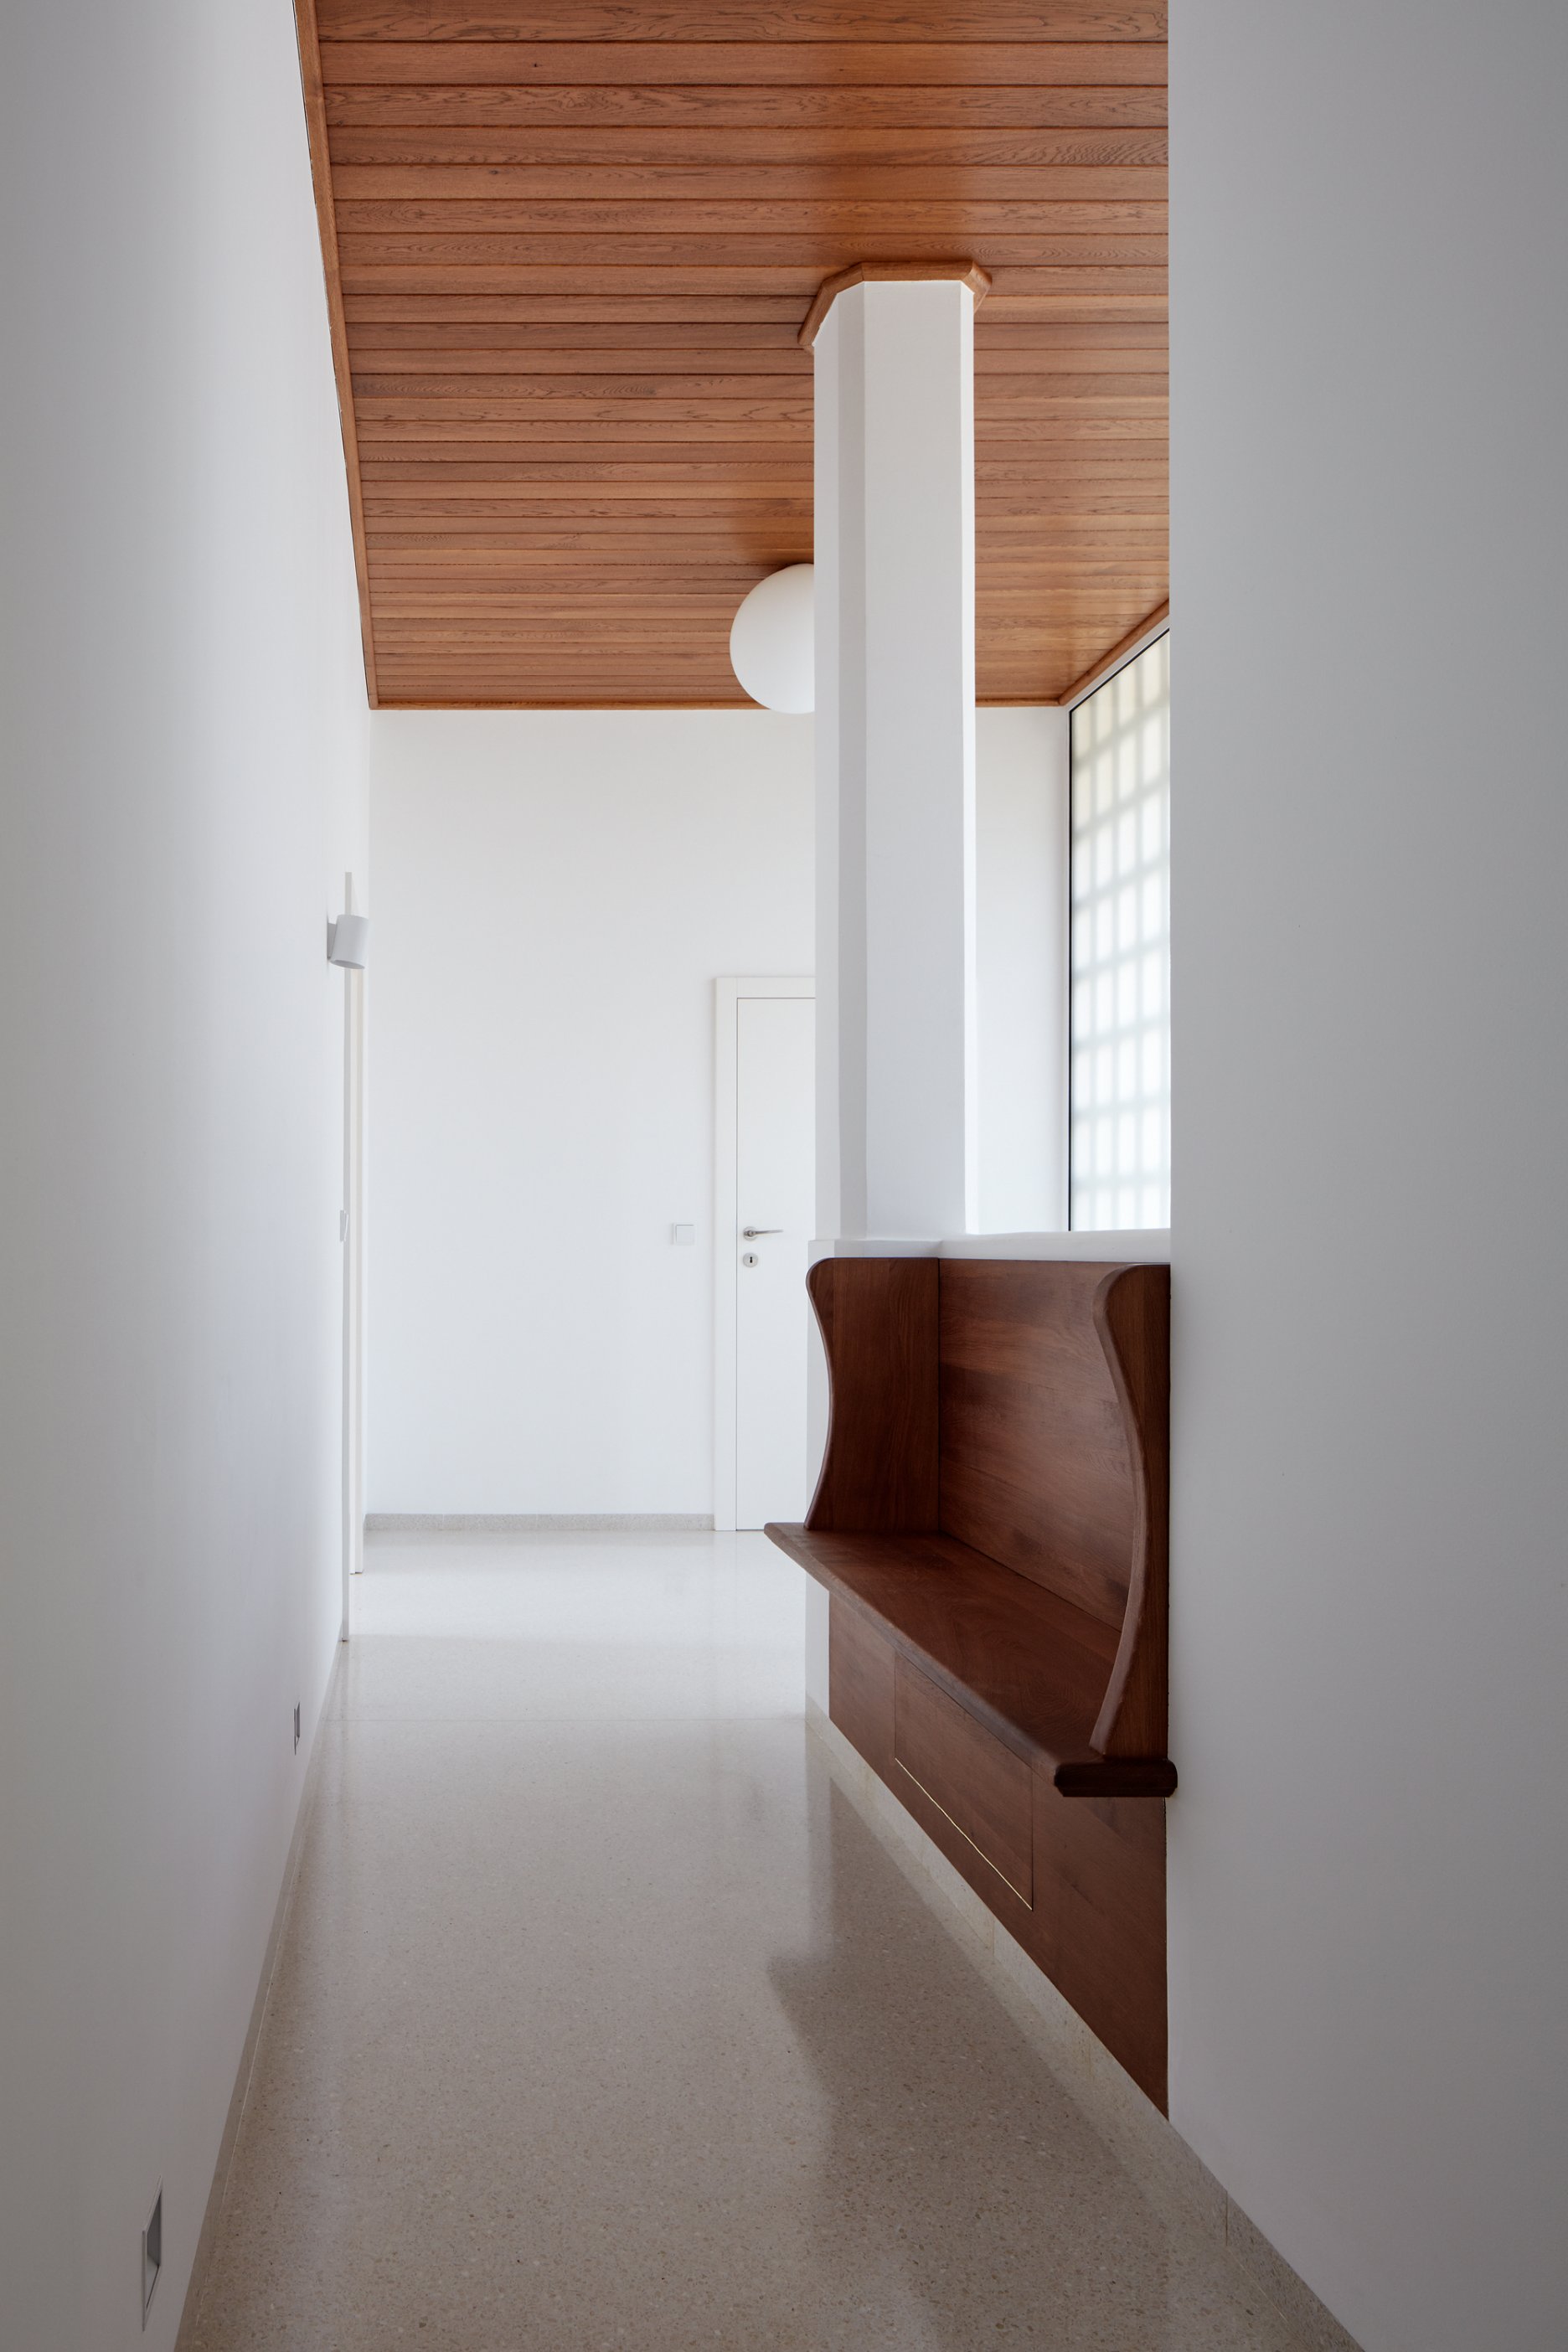 Priestor vstupnej haly zdôraznený dubovým podhľadom a jednoduchým skleneným svietidlom.